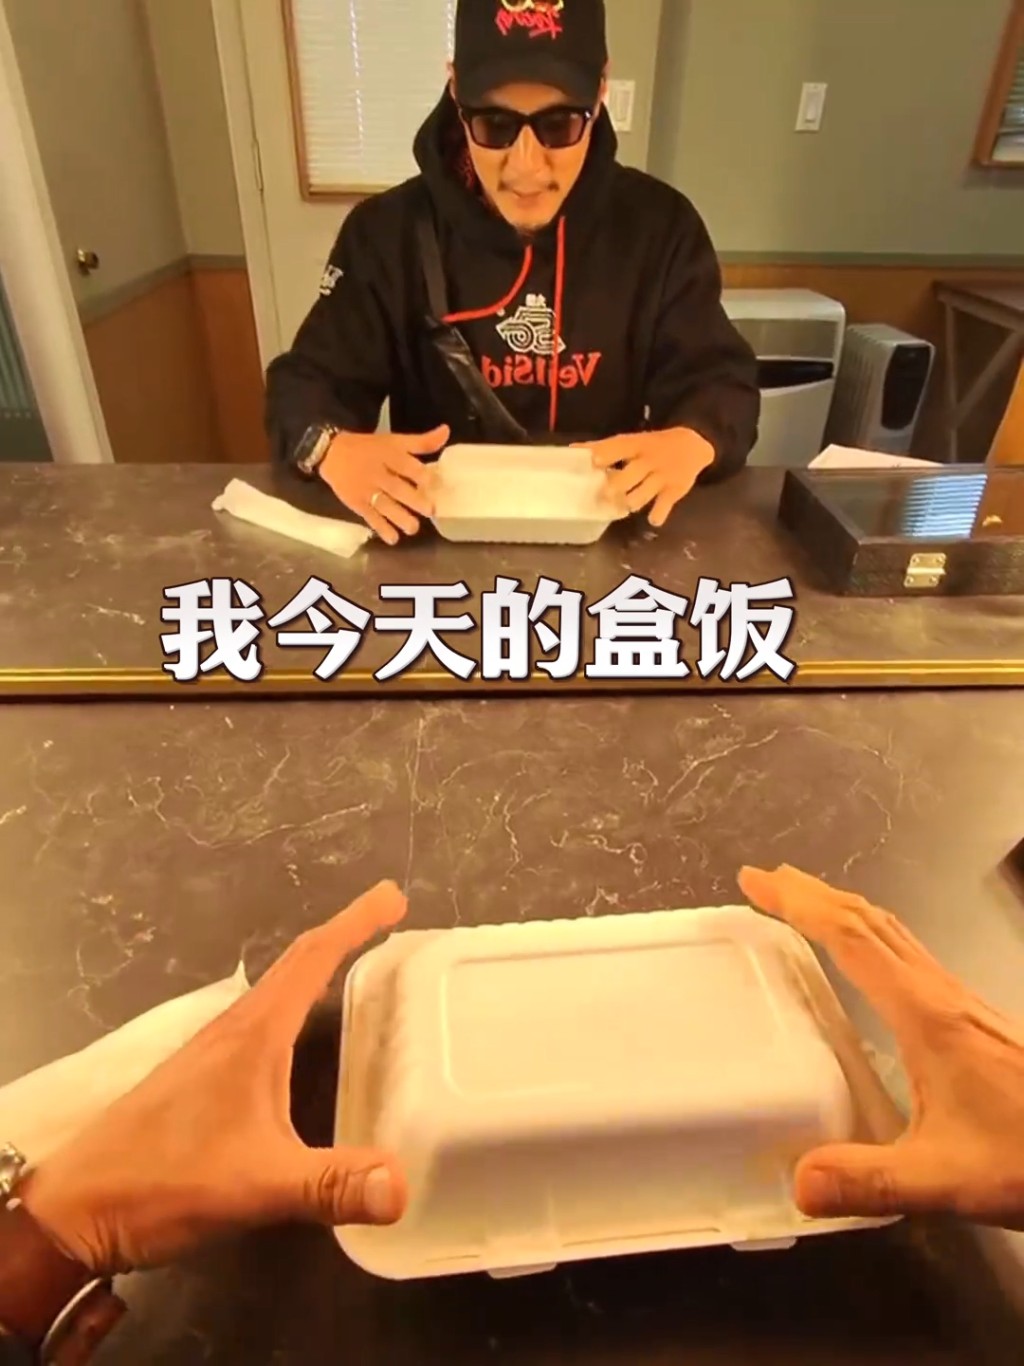 吴彦祖在抖音分享一段在拍摄新片《With Love》的片场伙食片。